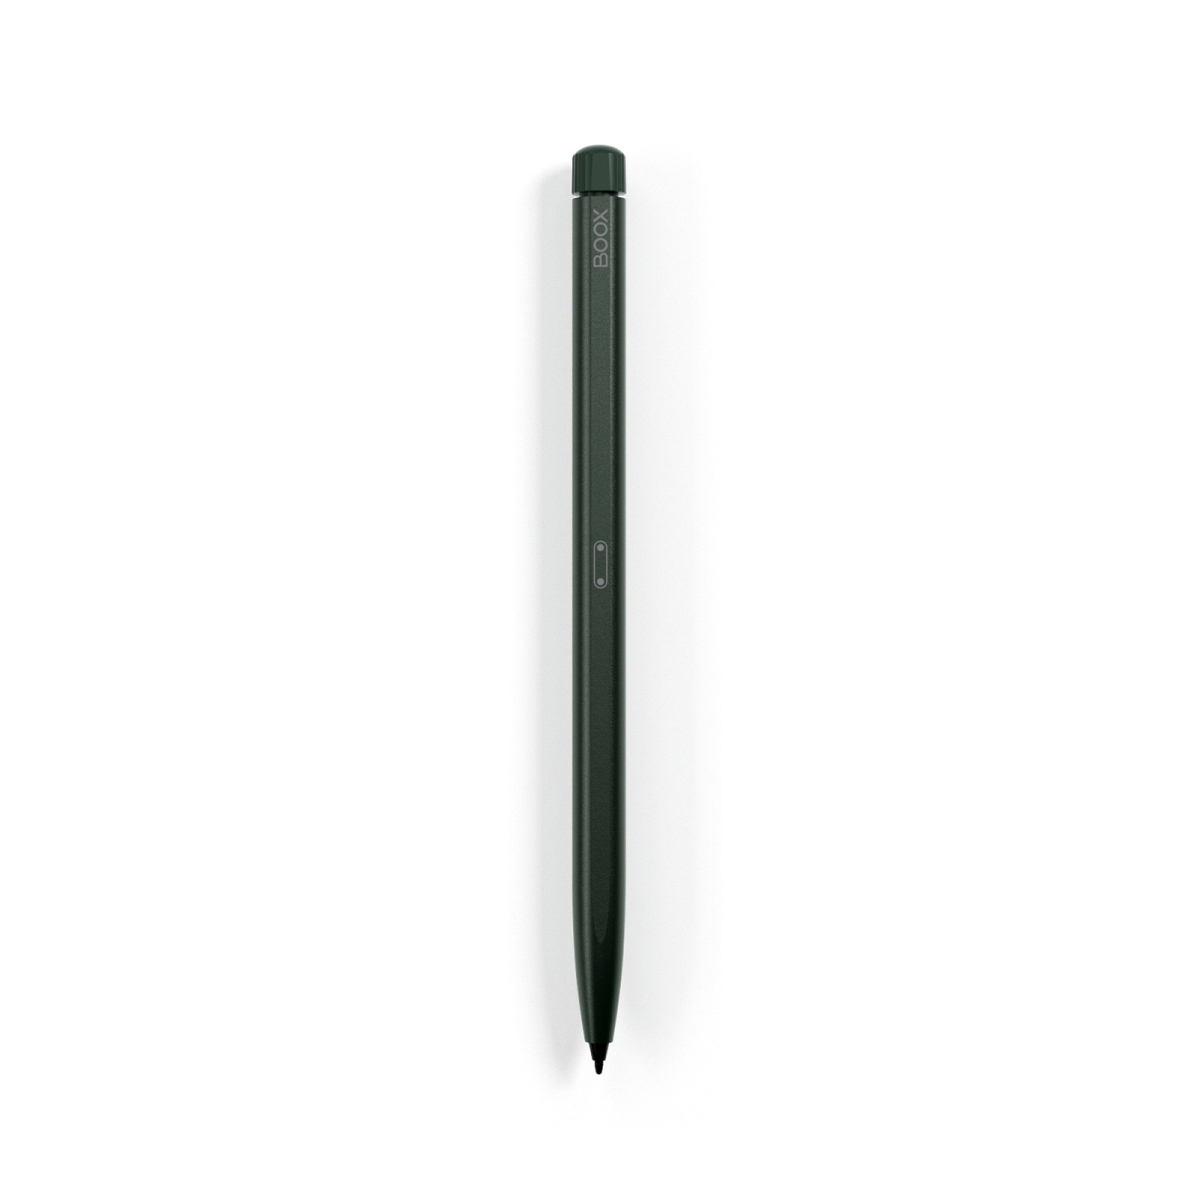 Rysik Onyx Boox Pen 2 Pro z wbudowaną gumką w kolorze zielonym